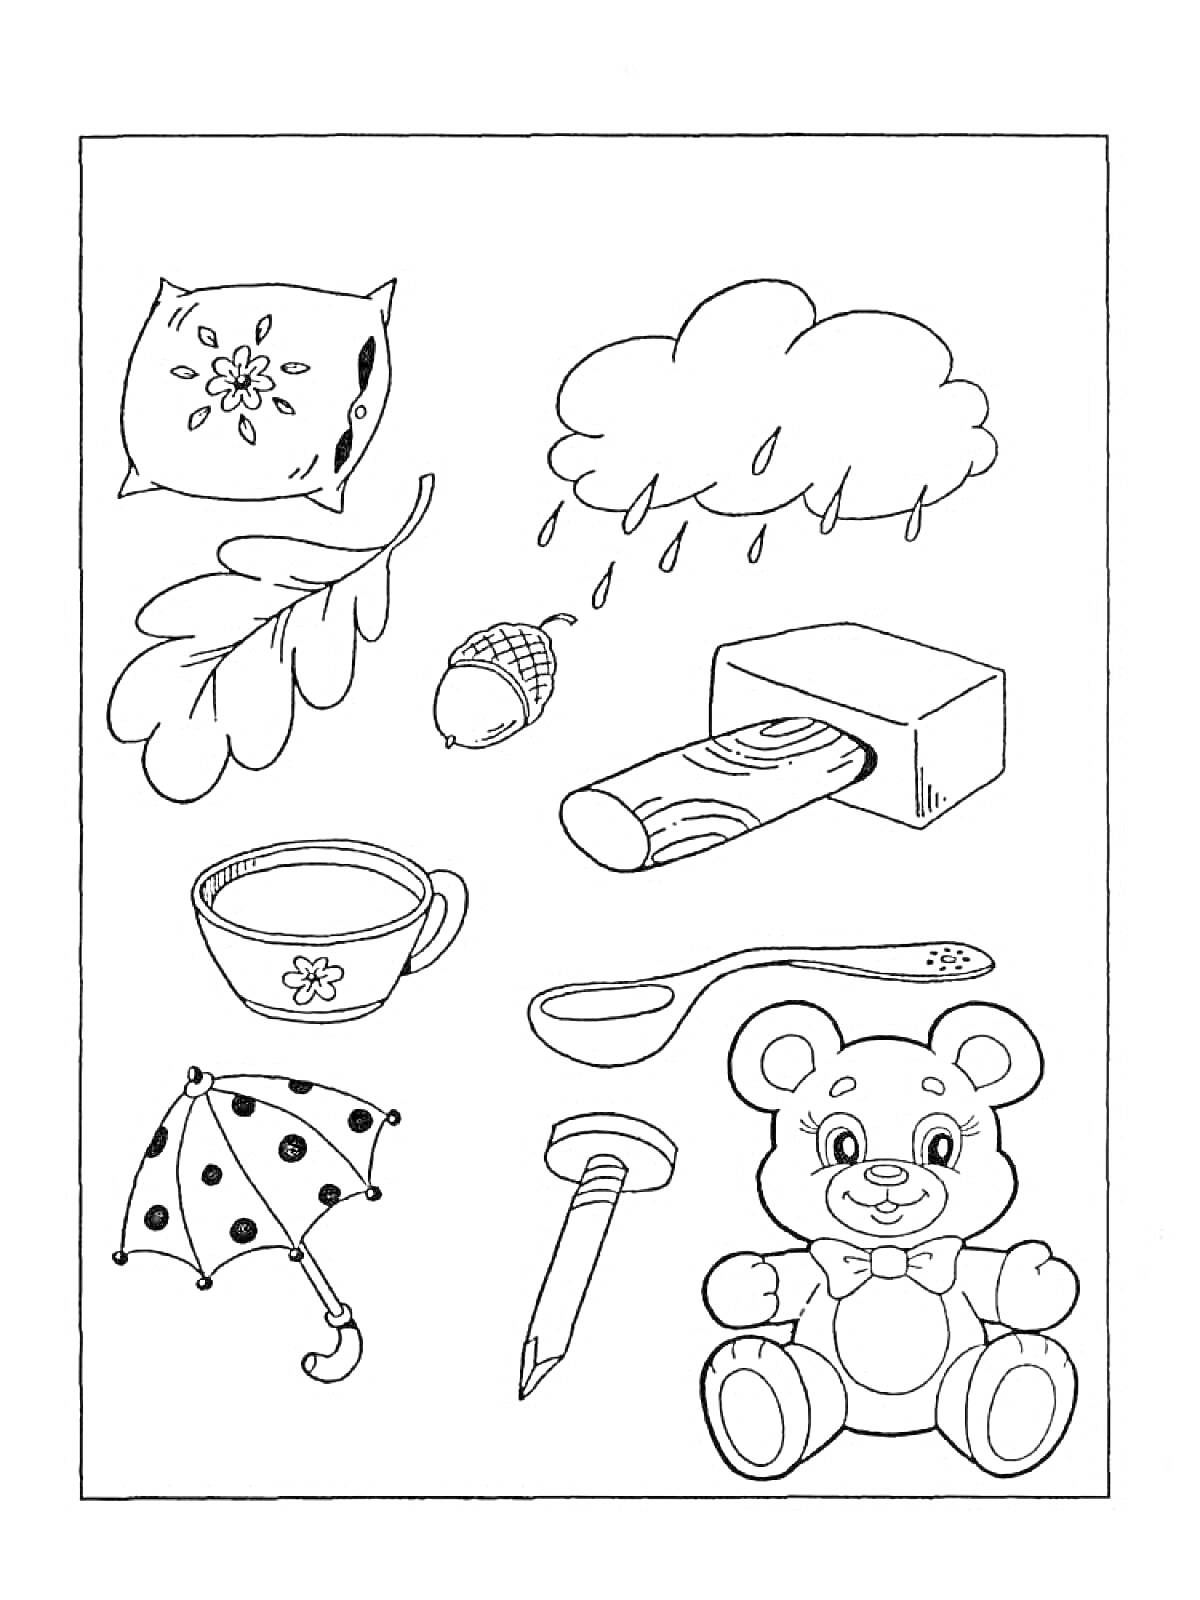 Раскраска Подушка, тучка с дождем, лист с желудем, чашка, полено, зубная щетка, зонтик, ложка, карандаш, плюшевый мишка